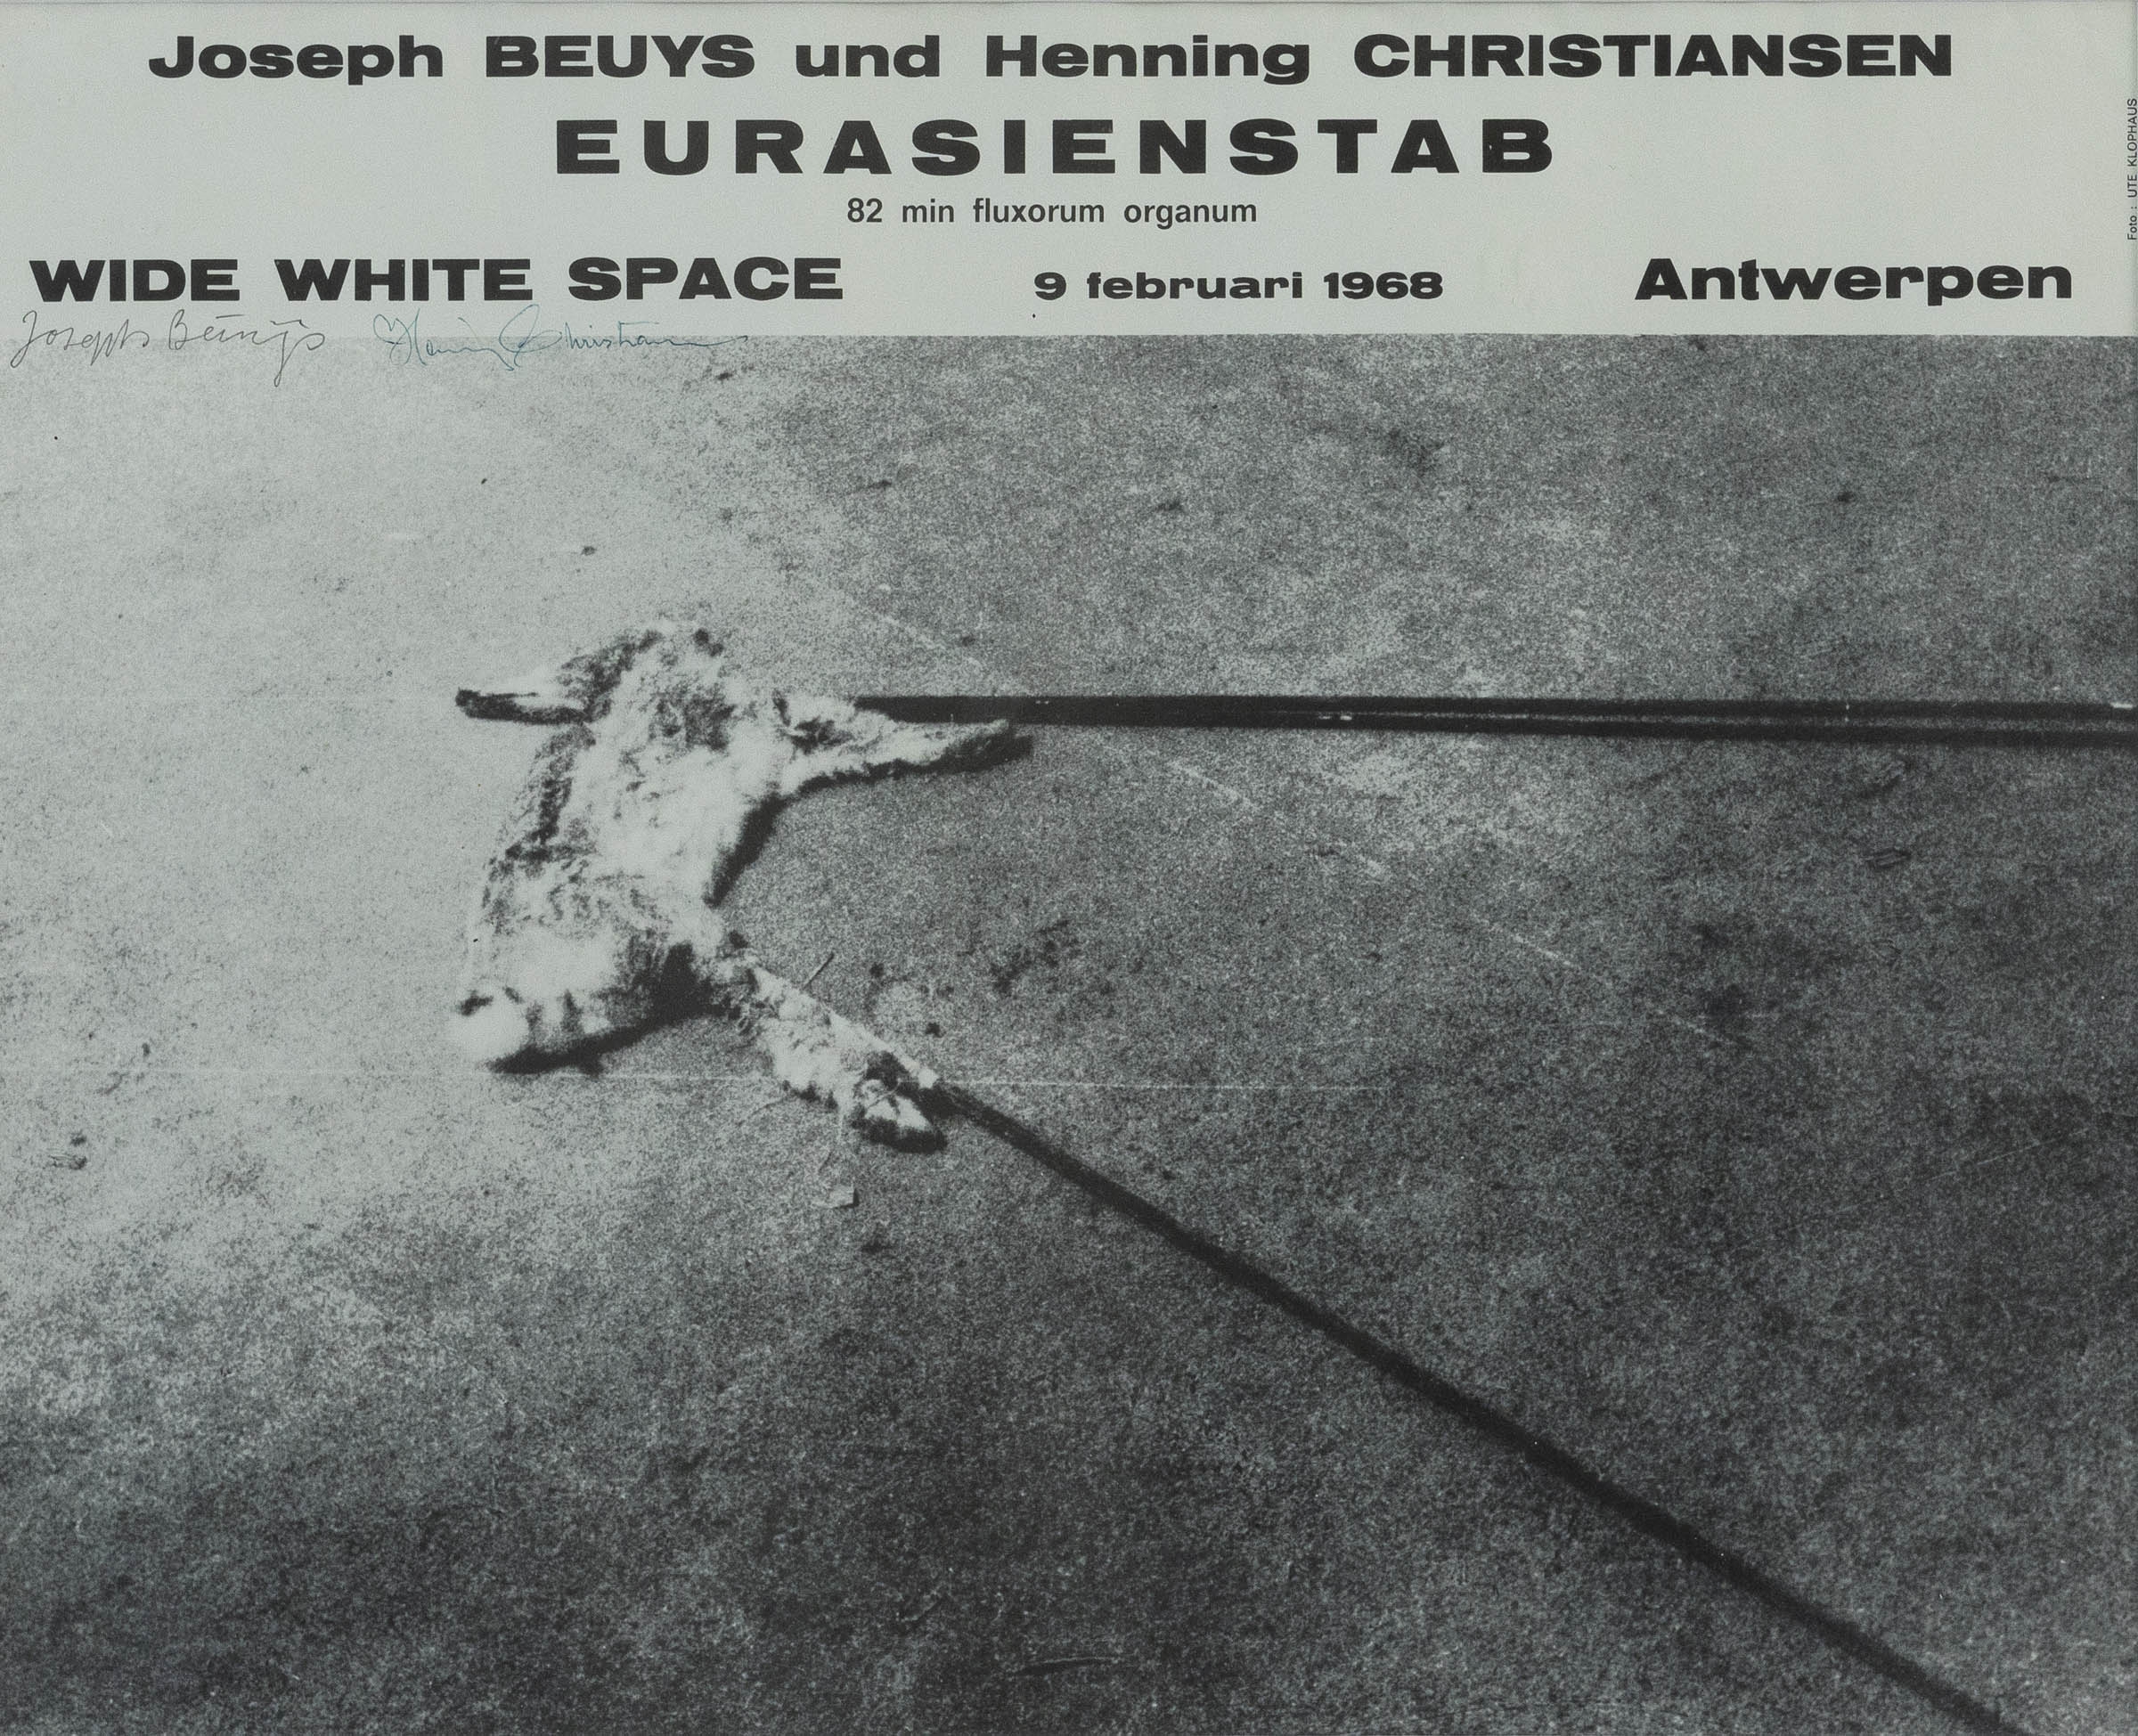 'Eurasienstab', 1968 by Henning Christiansen, Joseph Beuys, 1968